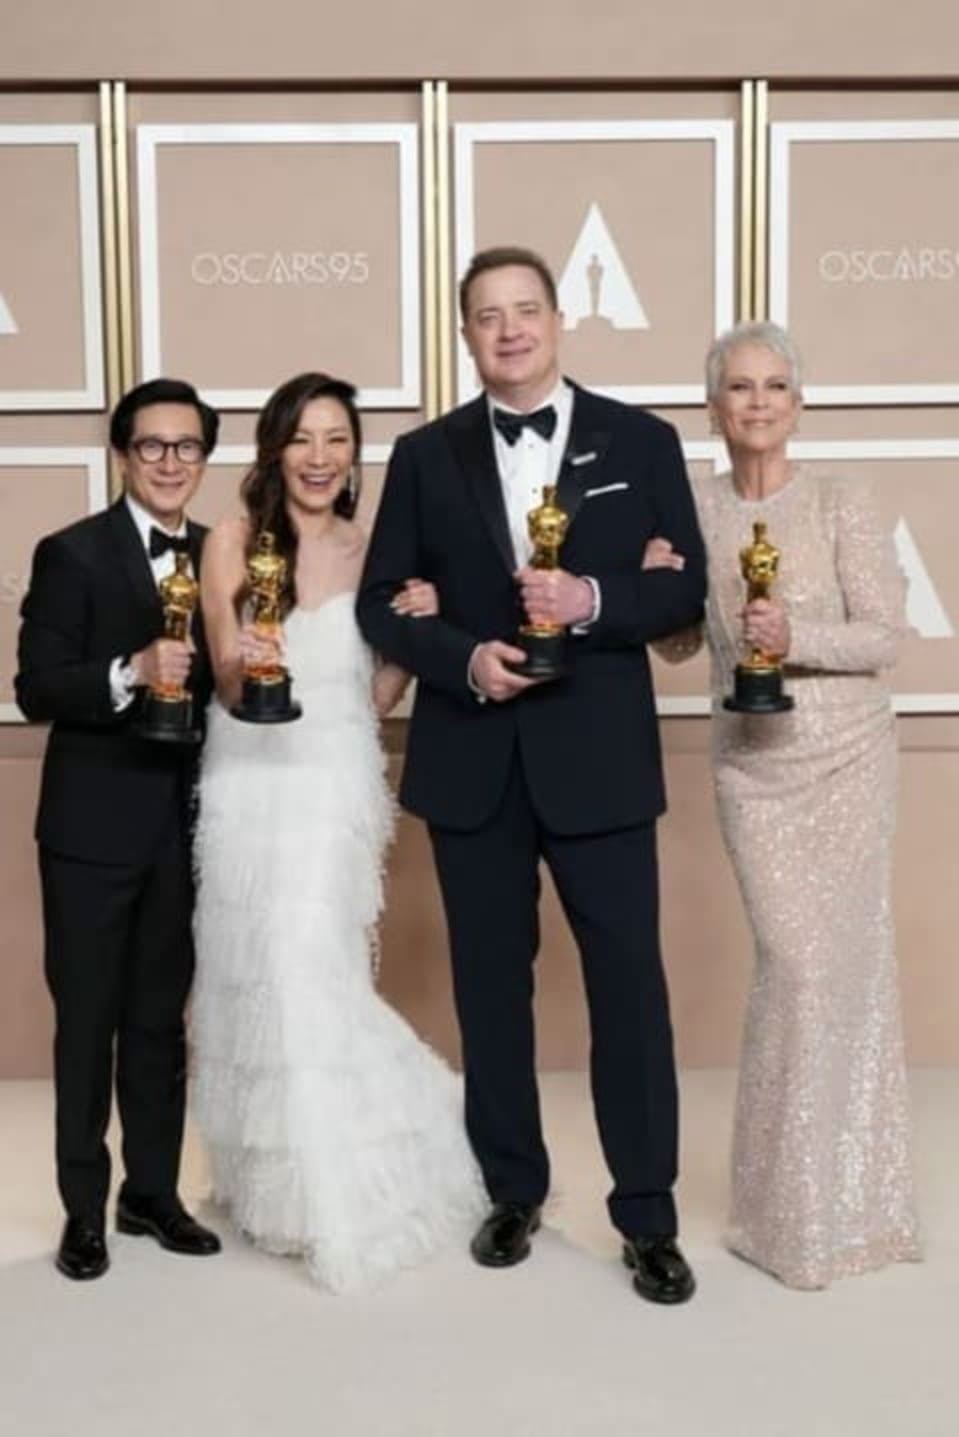 Vencedores do Oscar